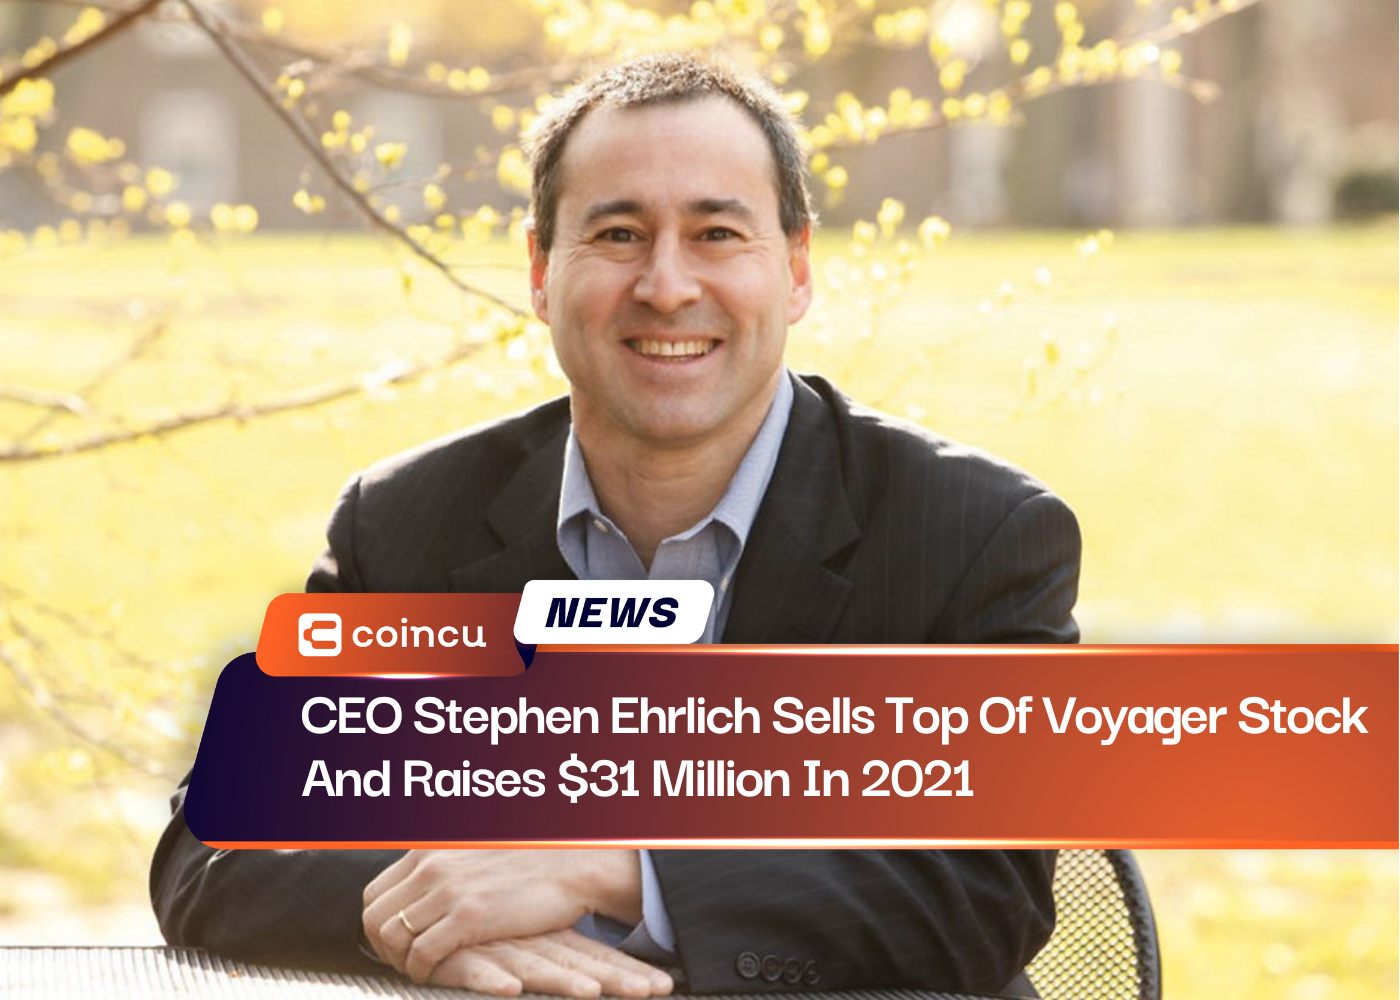 Le PDG Stephen Ehrlich vend la majeure partie des actions Voyager et lève 31 millions de dollars en 2021